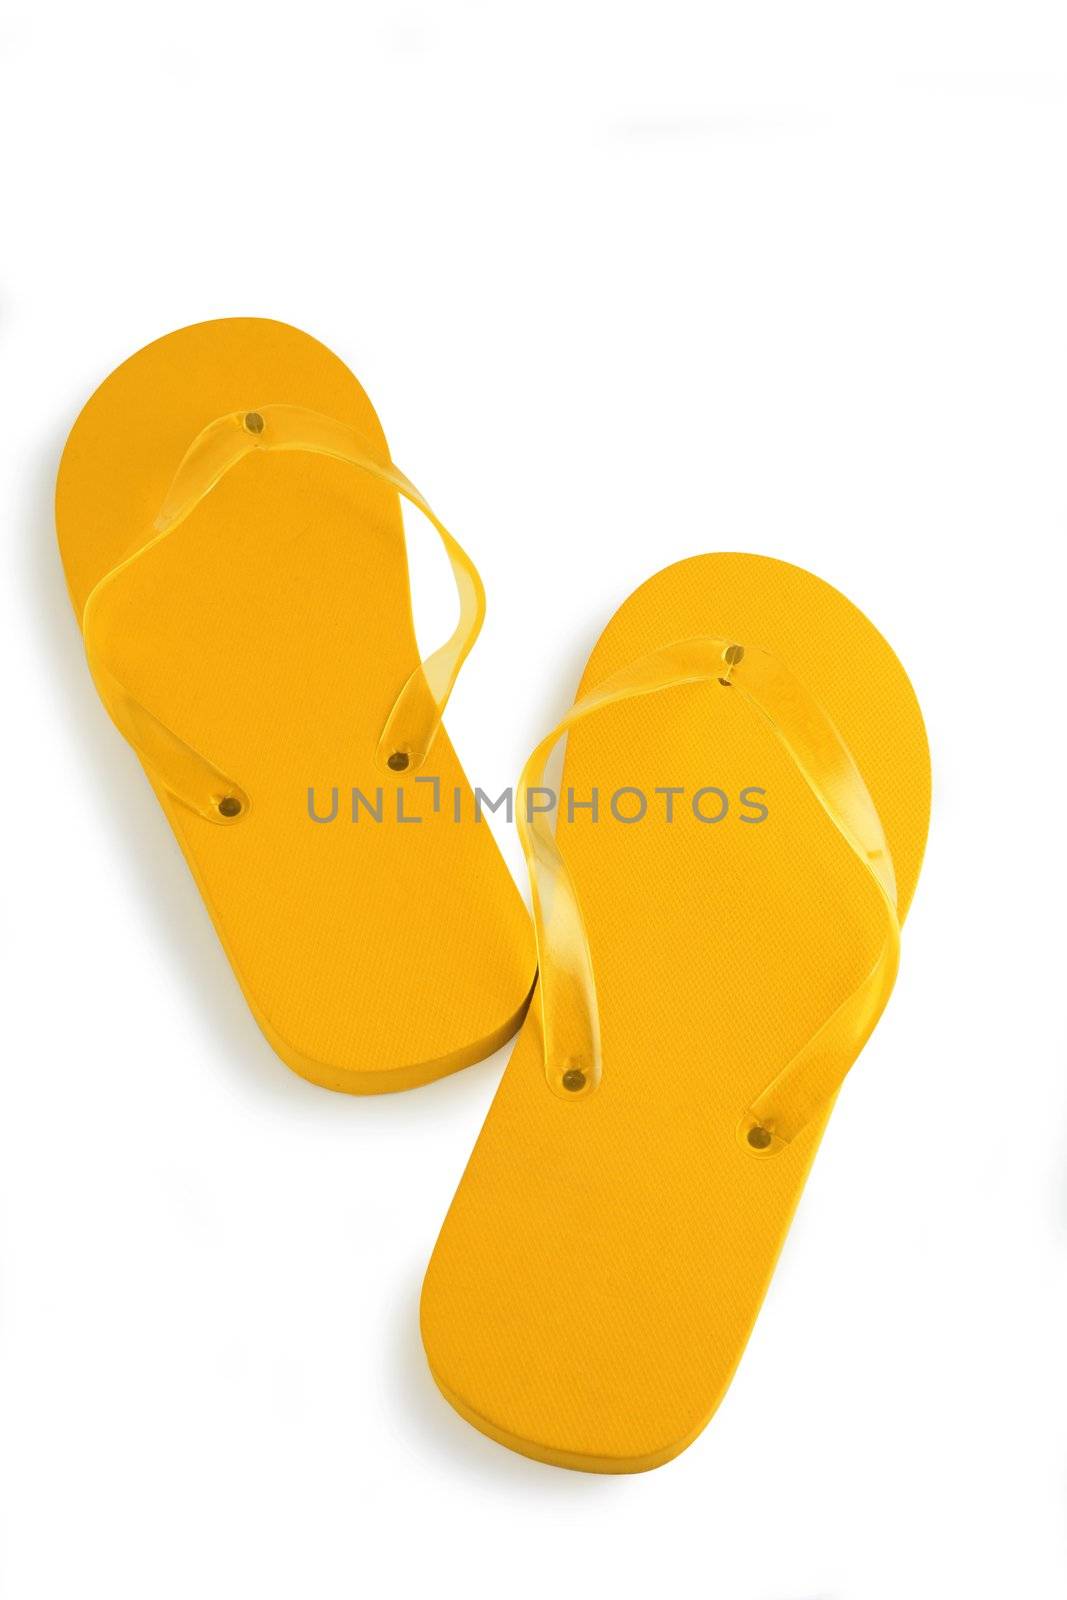 Pair of flip-flops by phovoir